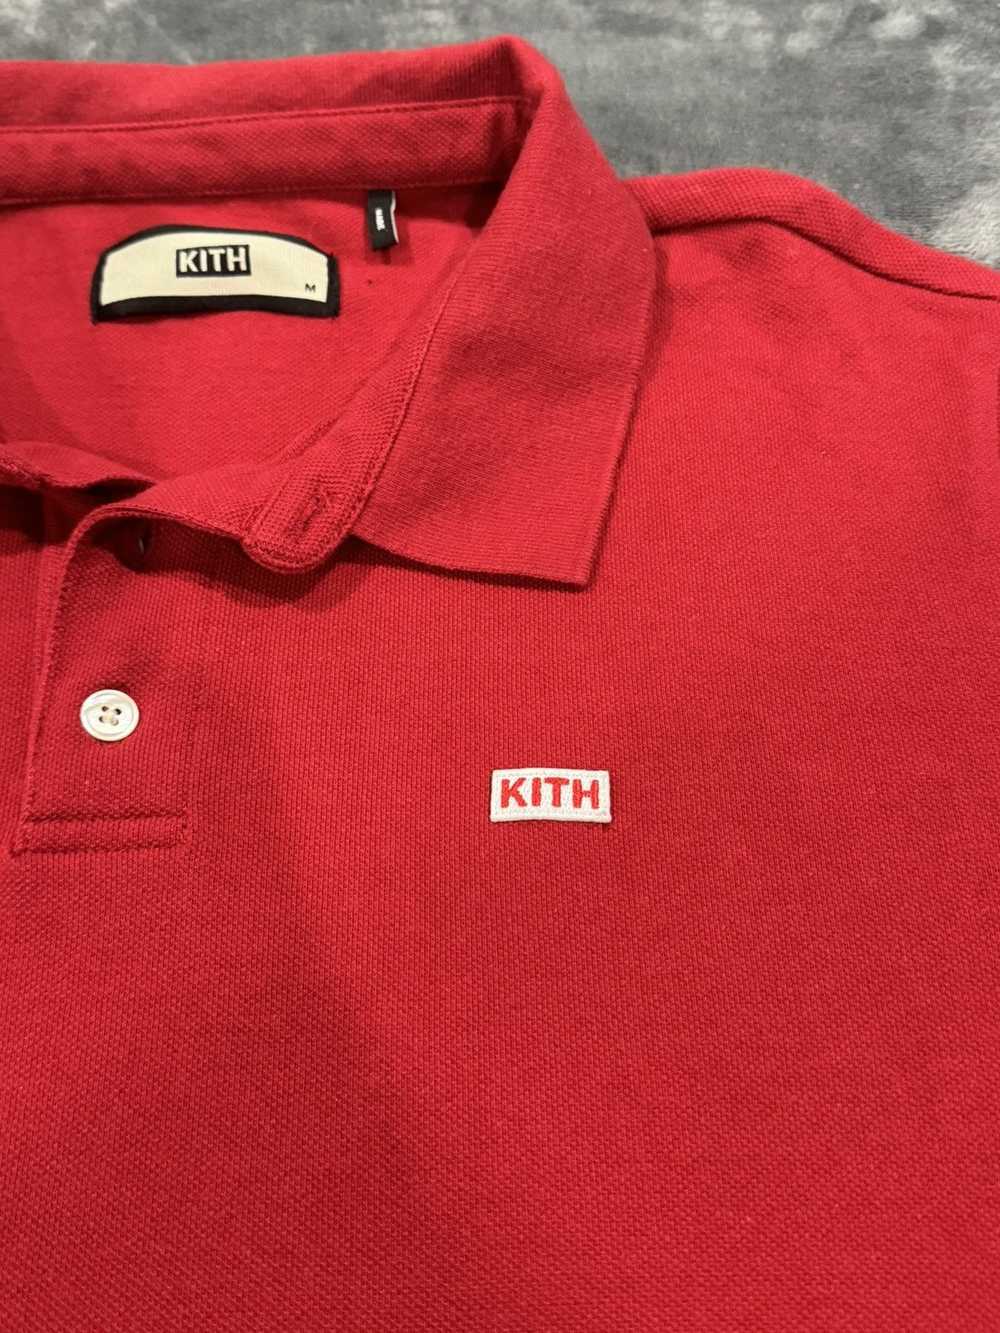 Kith Kith Pique SS Polo - Red - image 3